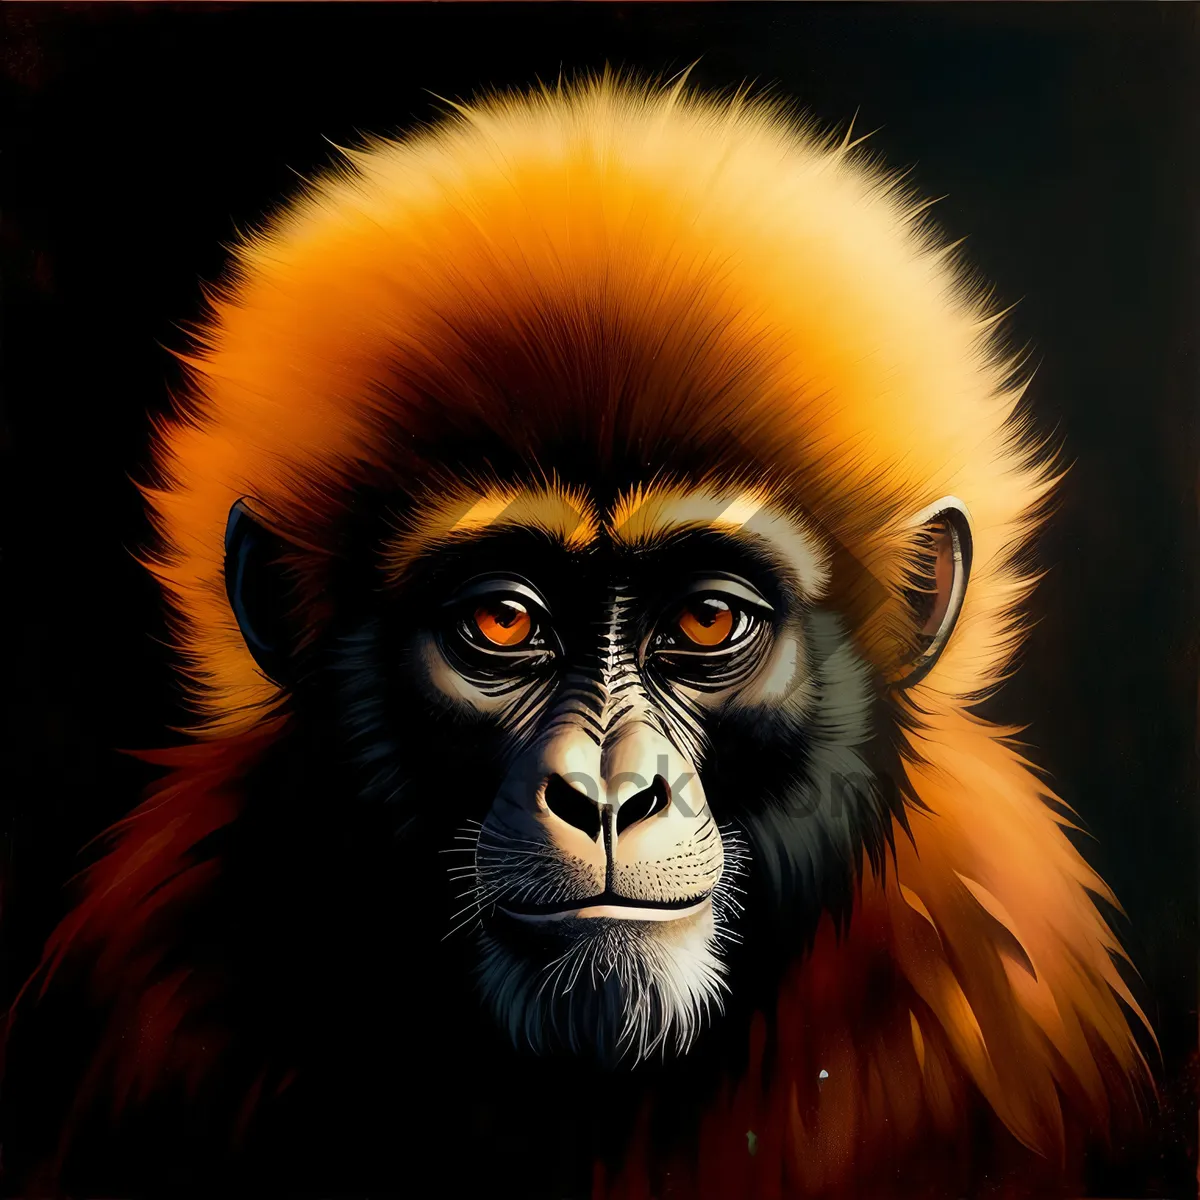 Picture of Intense Black-Furred Primate Portrait